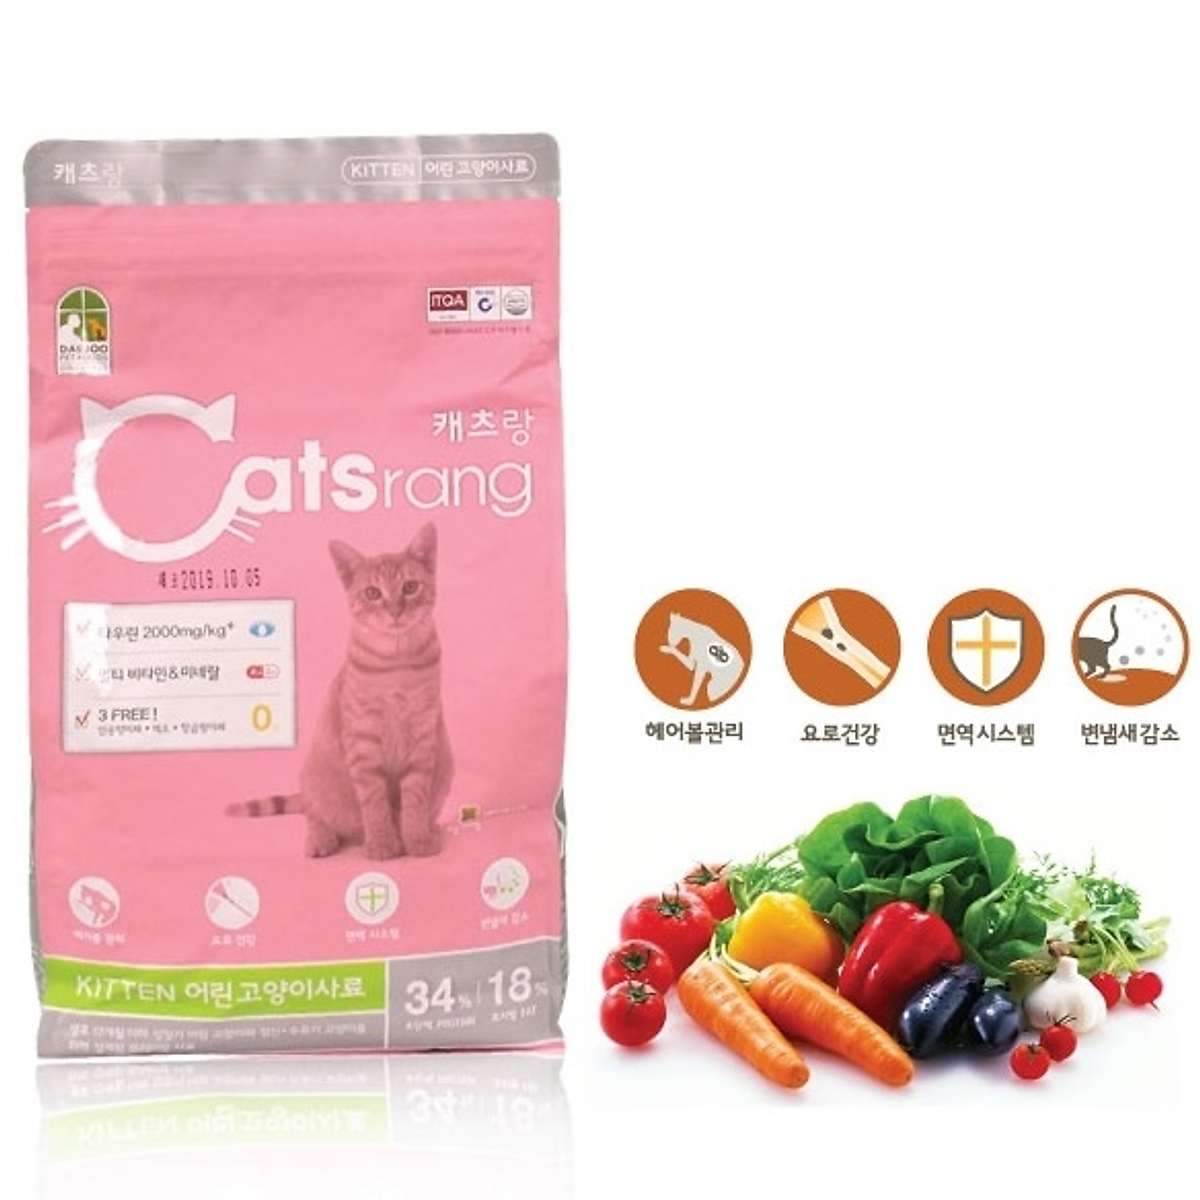 Catsrang kitten 400g thức ăn hạt cho mèo con dưới 6 tháng tuổi